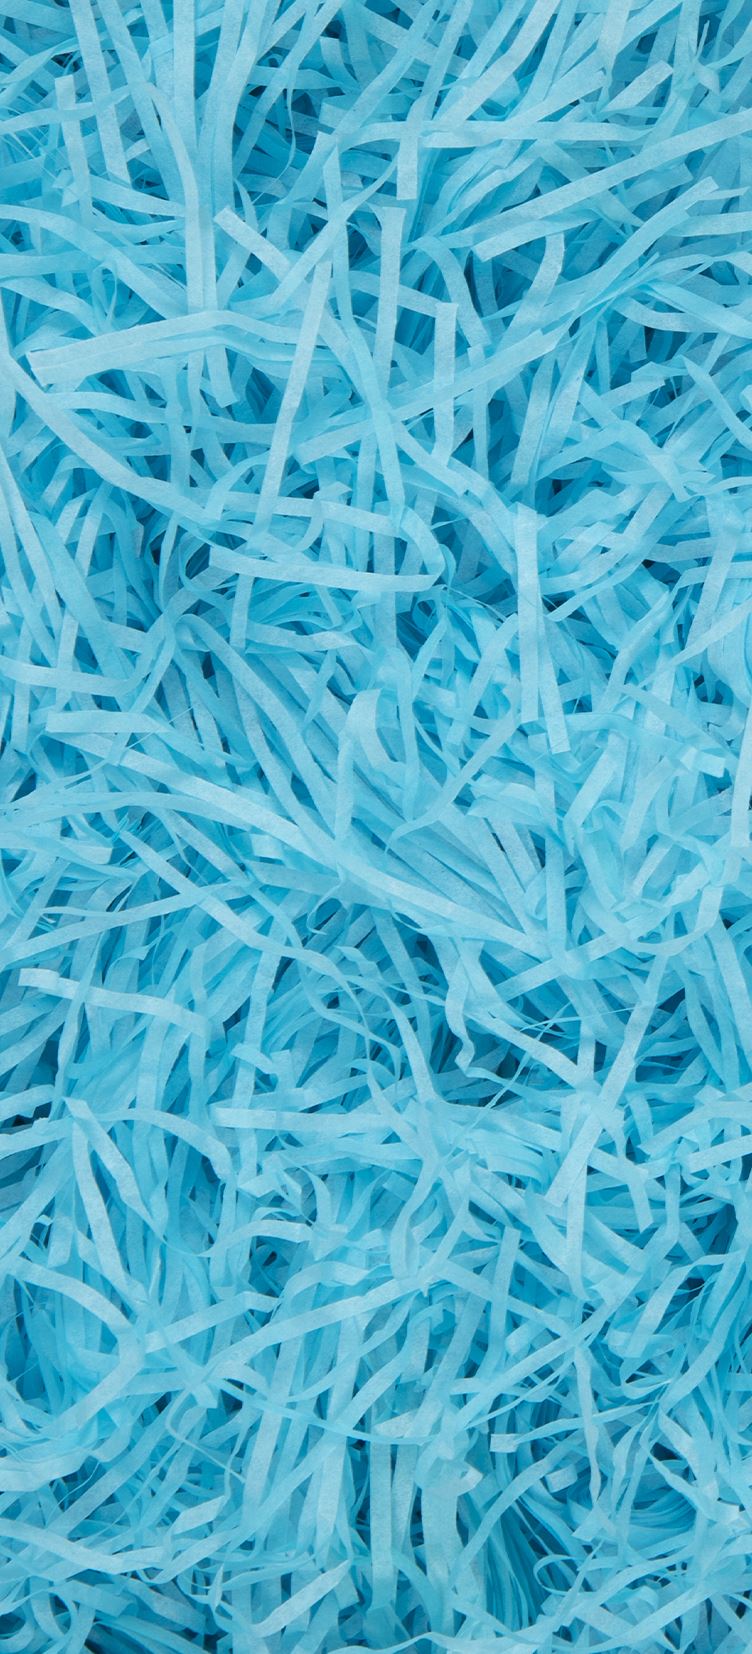 A mass of light blue shredded tissue paper.